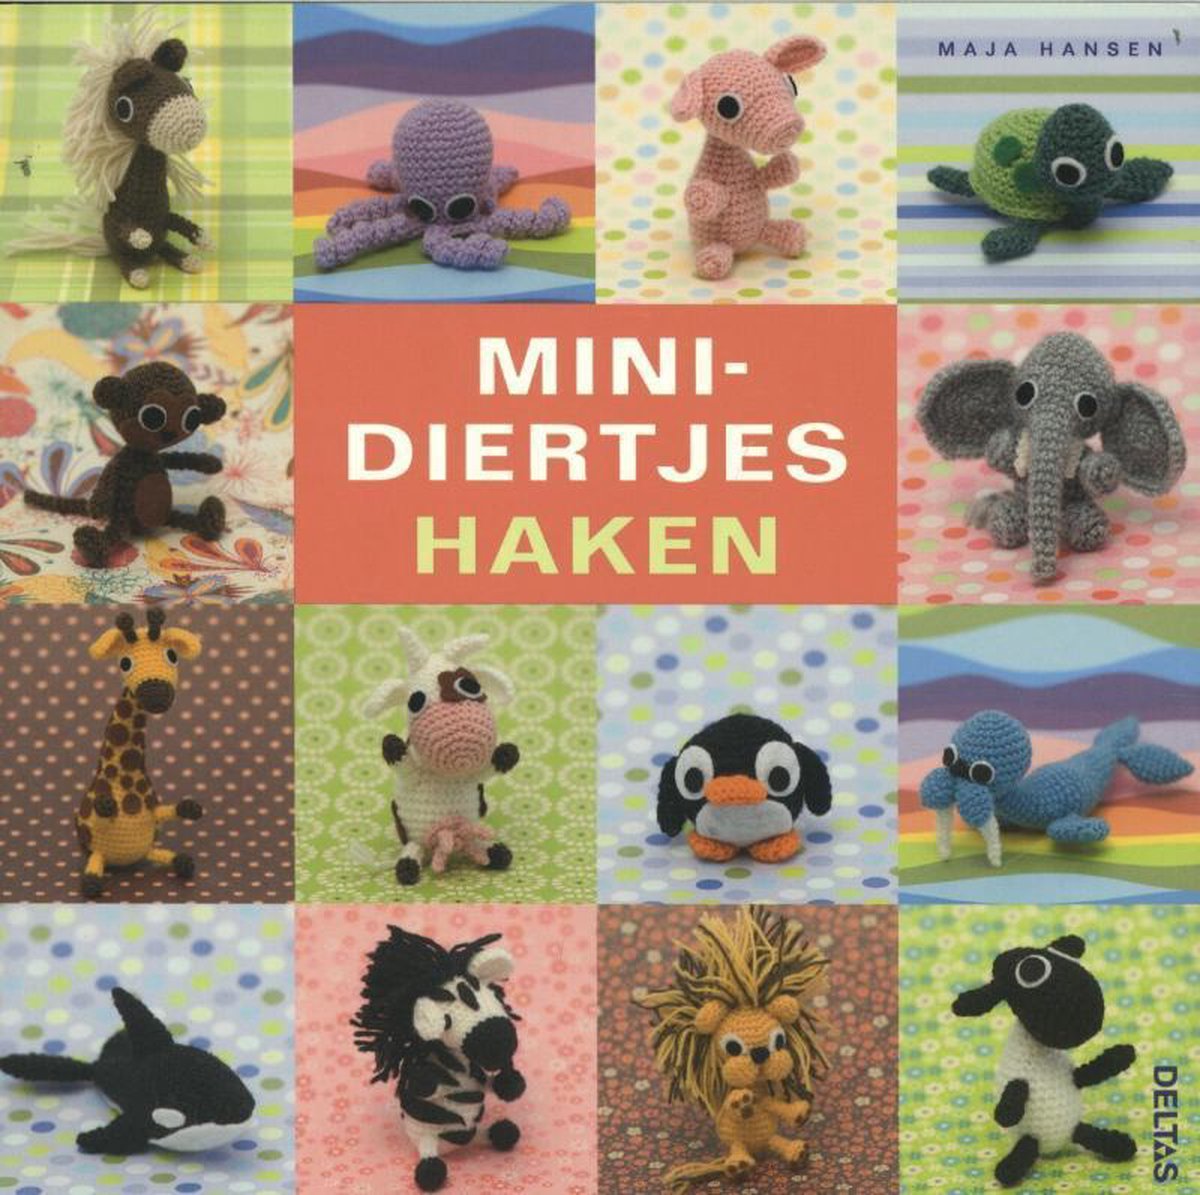 Minidiertjes haken, Hansen | 9789044734225 | Boeken | bol.com